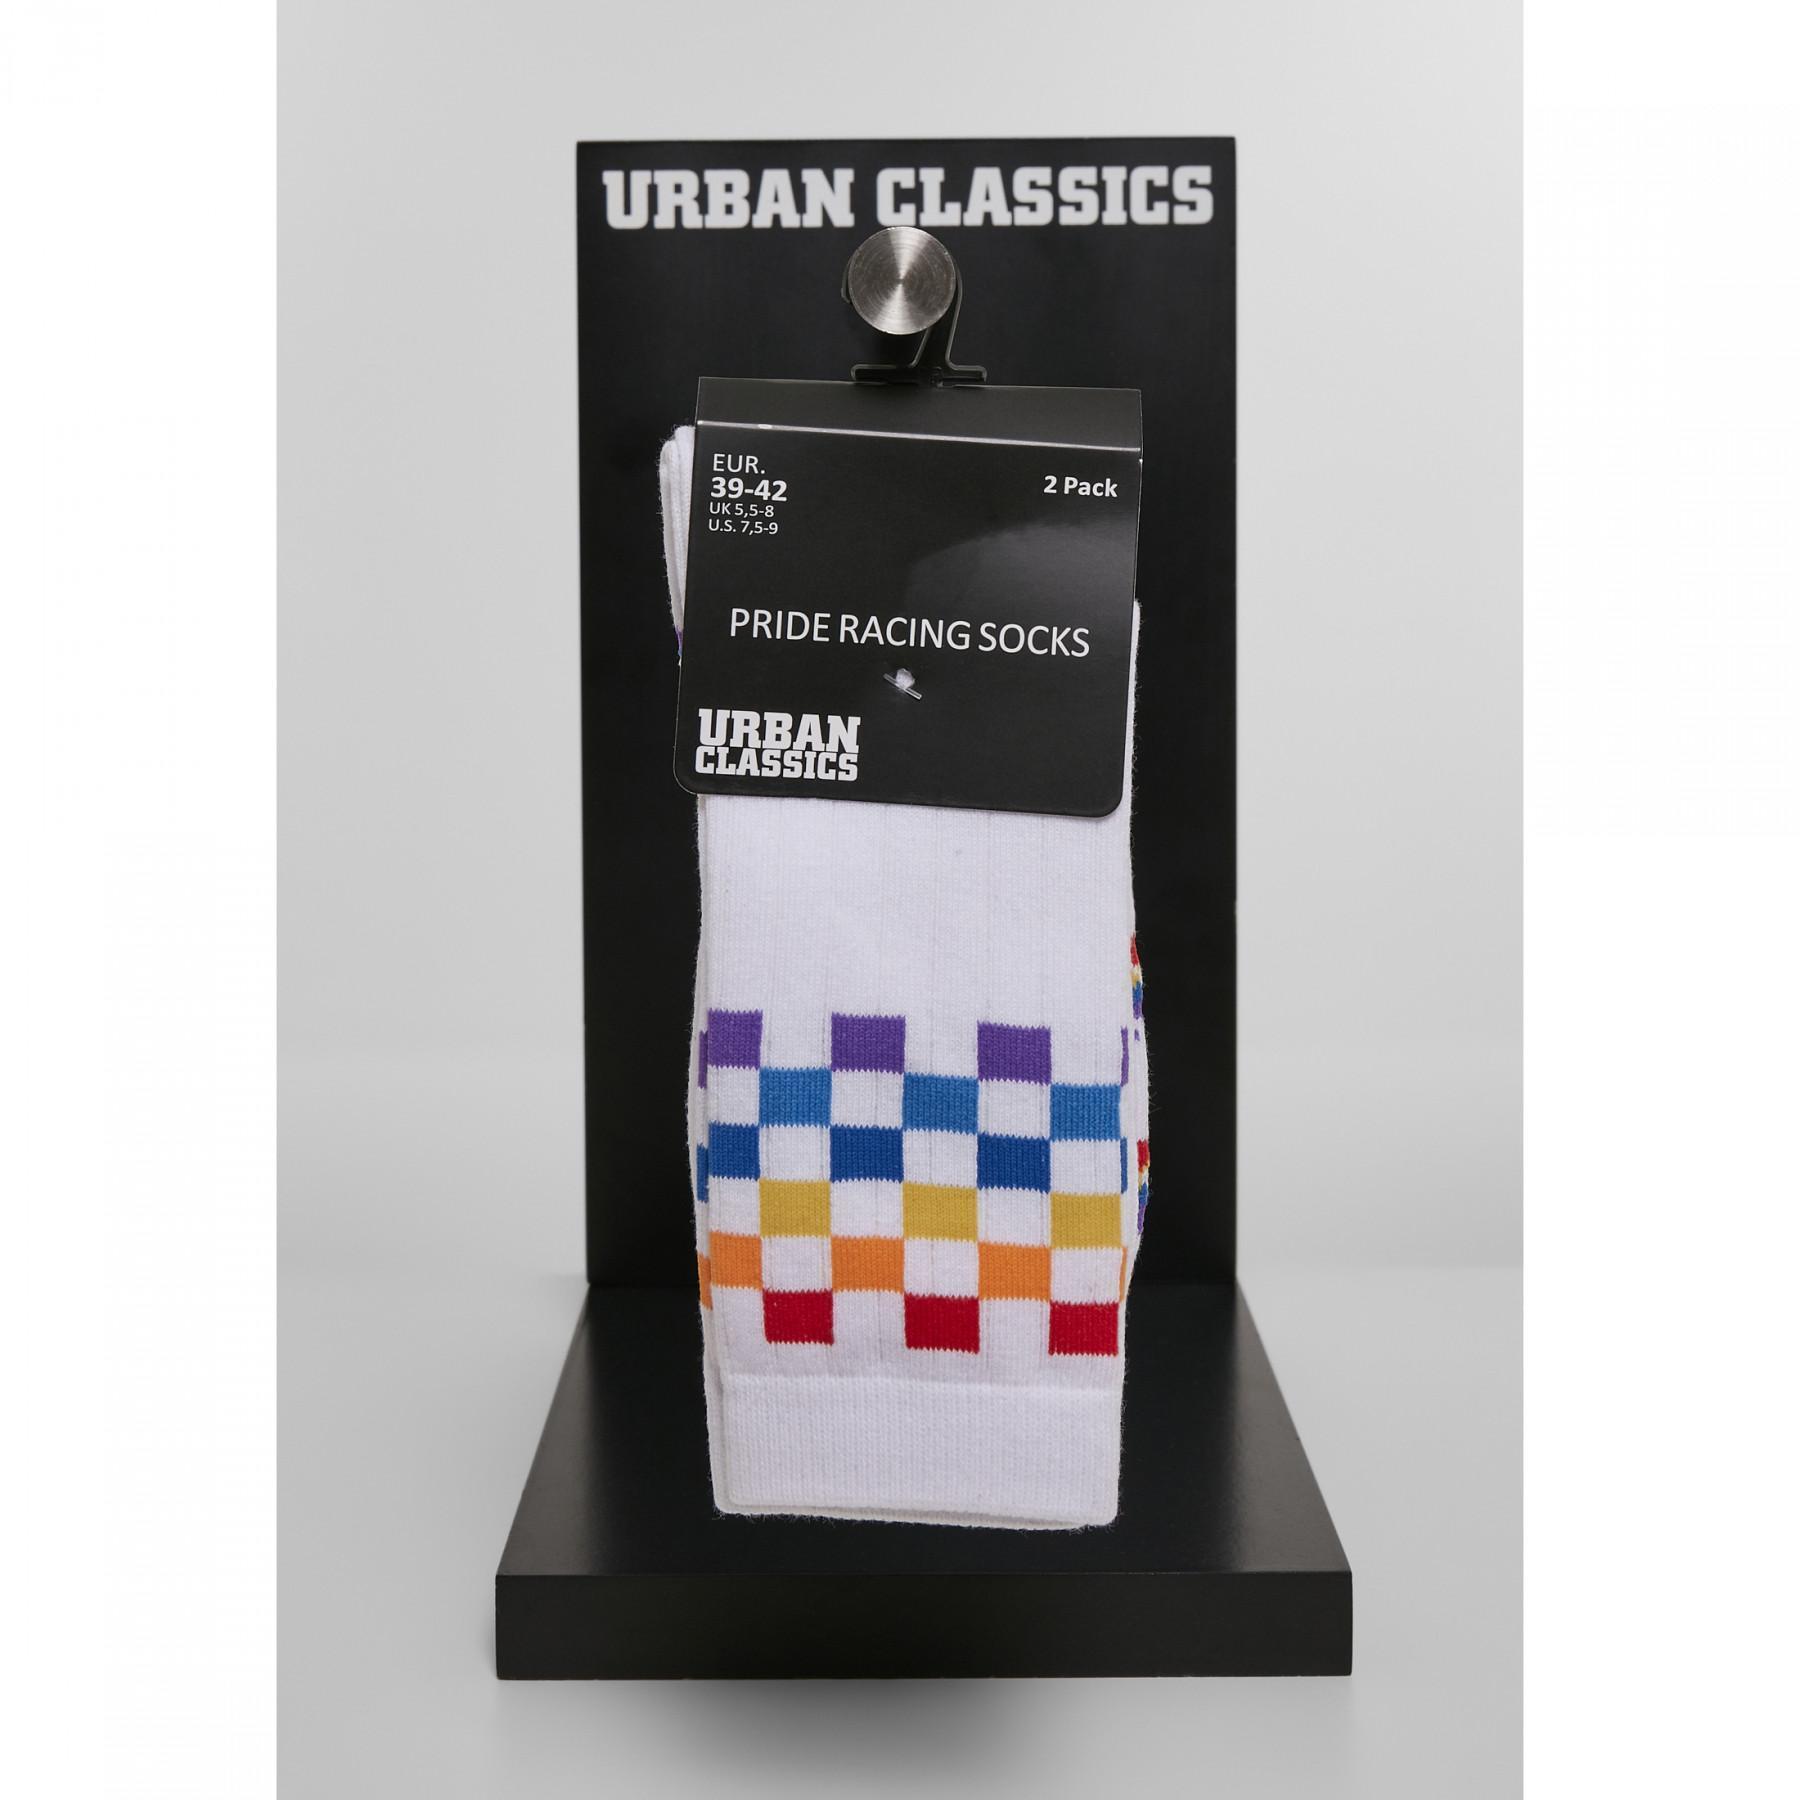 Socken Urban Classics pride racing (2pcs)